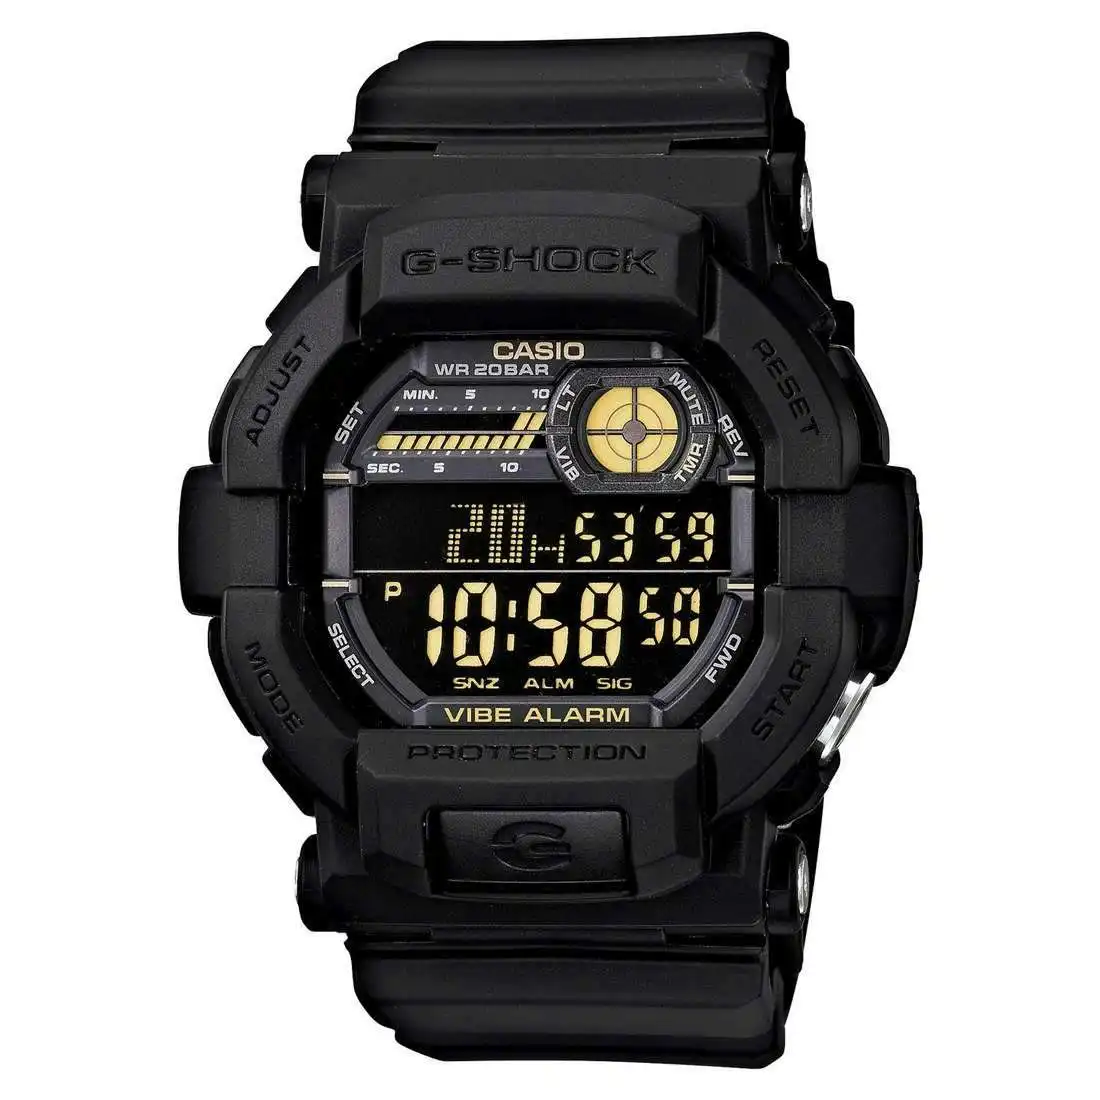 Casio G-Shock Black Digital Watch GD350-1B